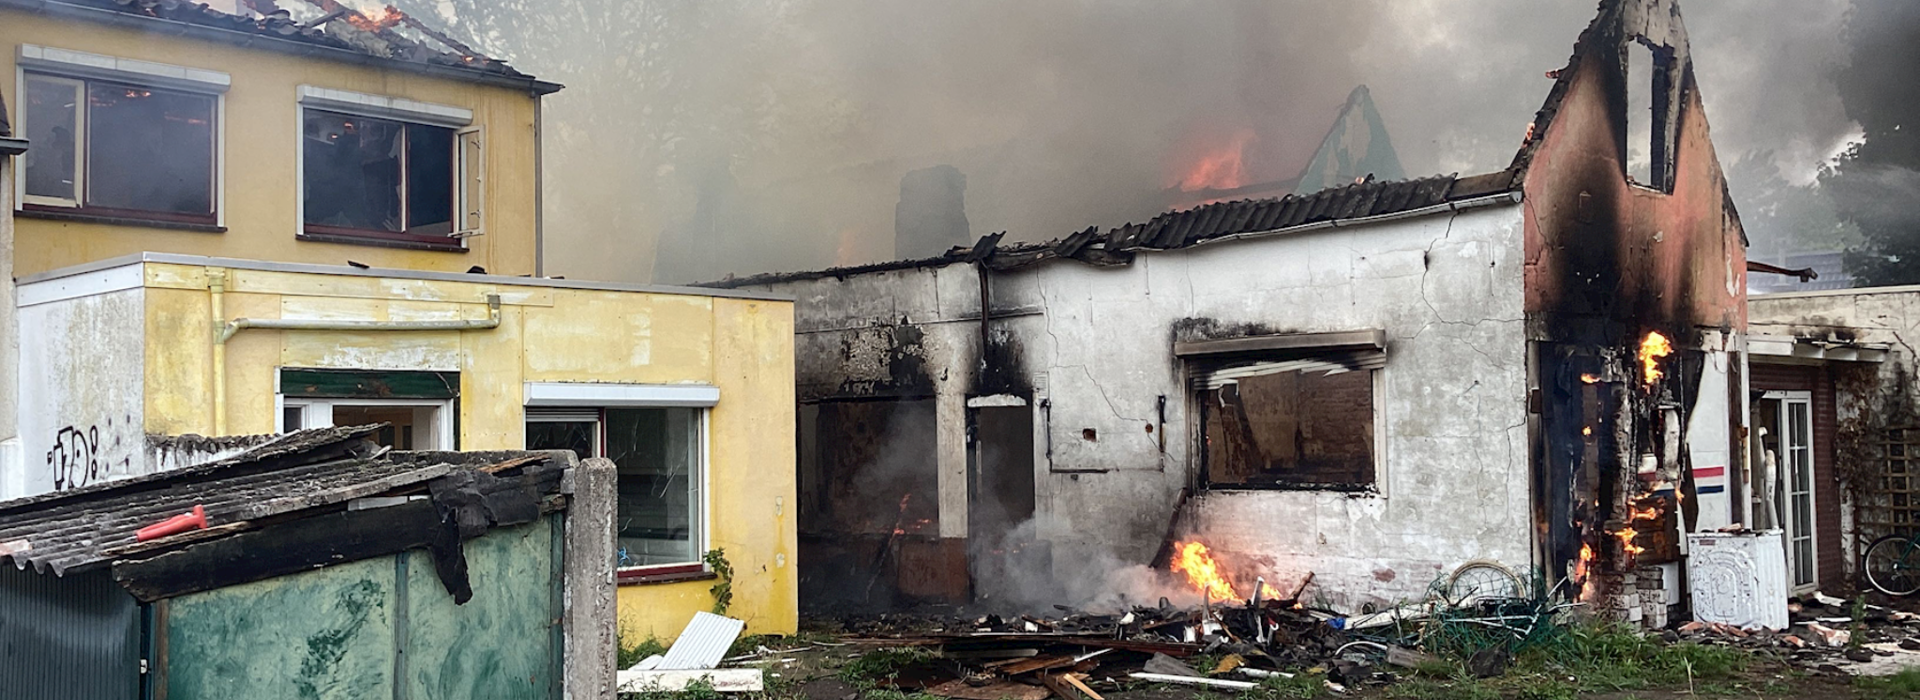 Woningen deels ingestort, zwart en nog deels in brand in Roosendaal